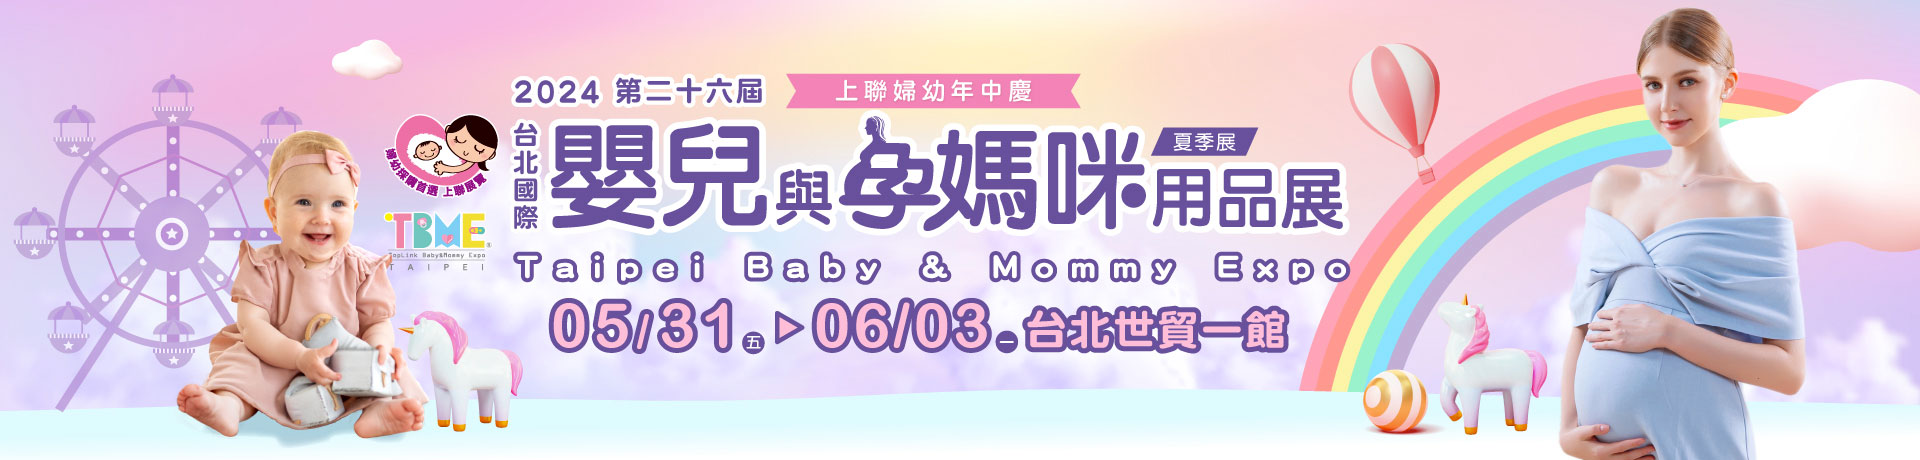 第26屆台北國際嬰兒與孕媽咪用品展(夏季展)